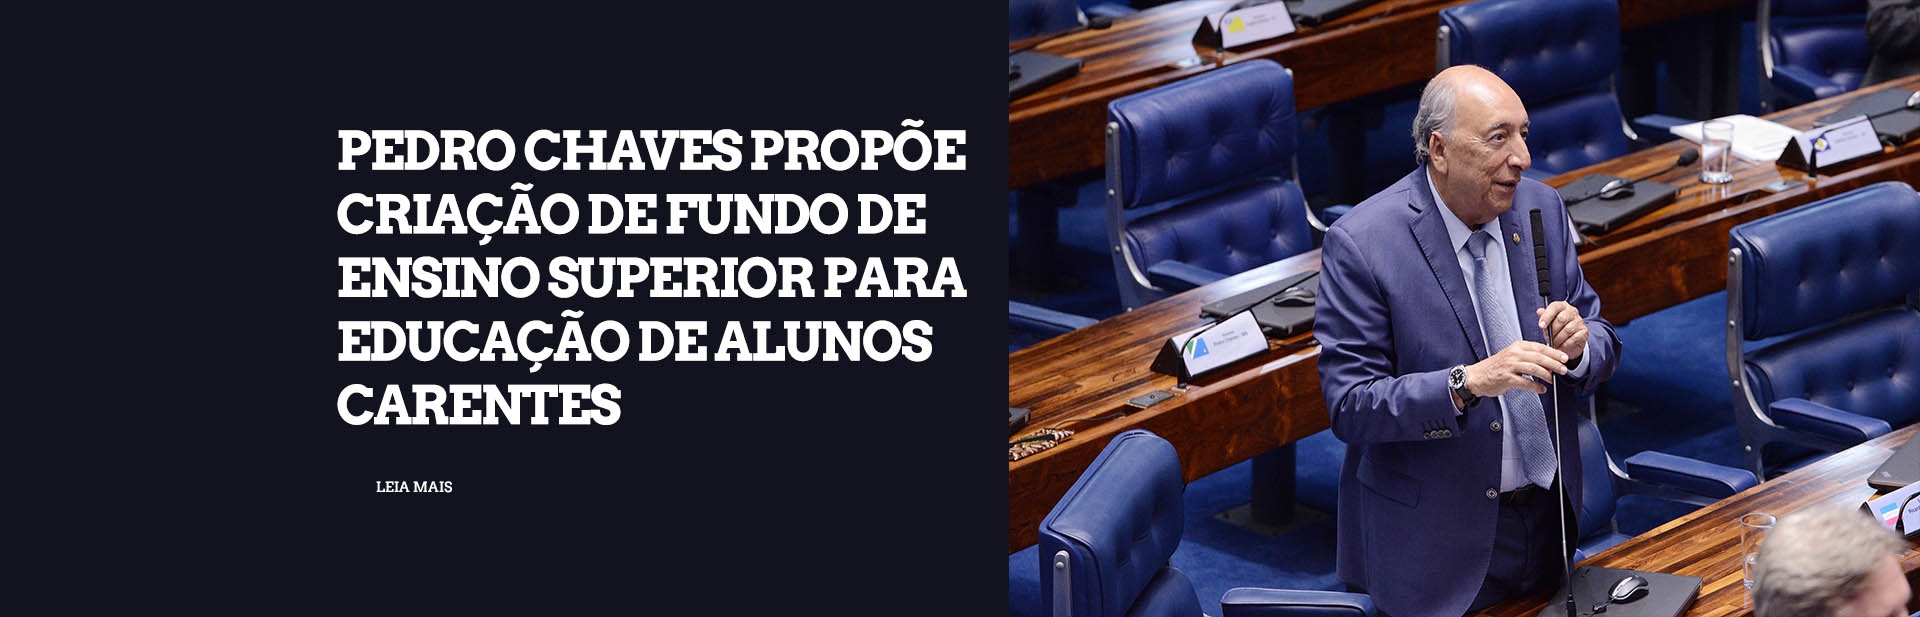 Pedro Chaves propõe criação de fundo de ensino superior para educação de alunos carentes